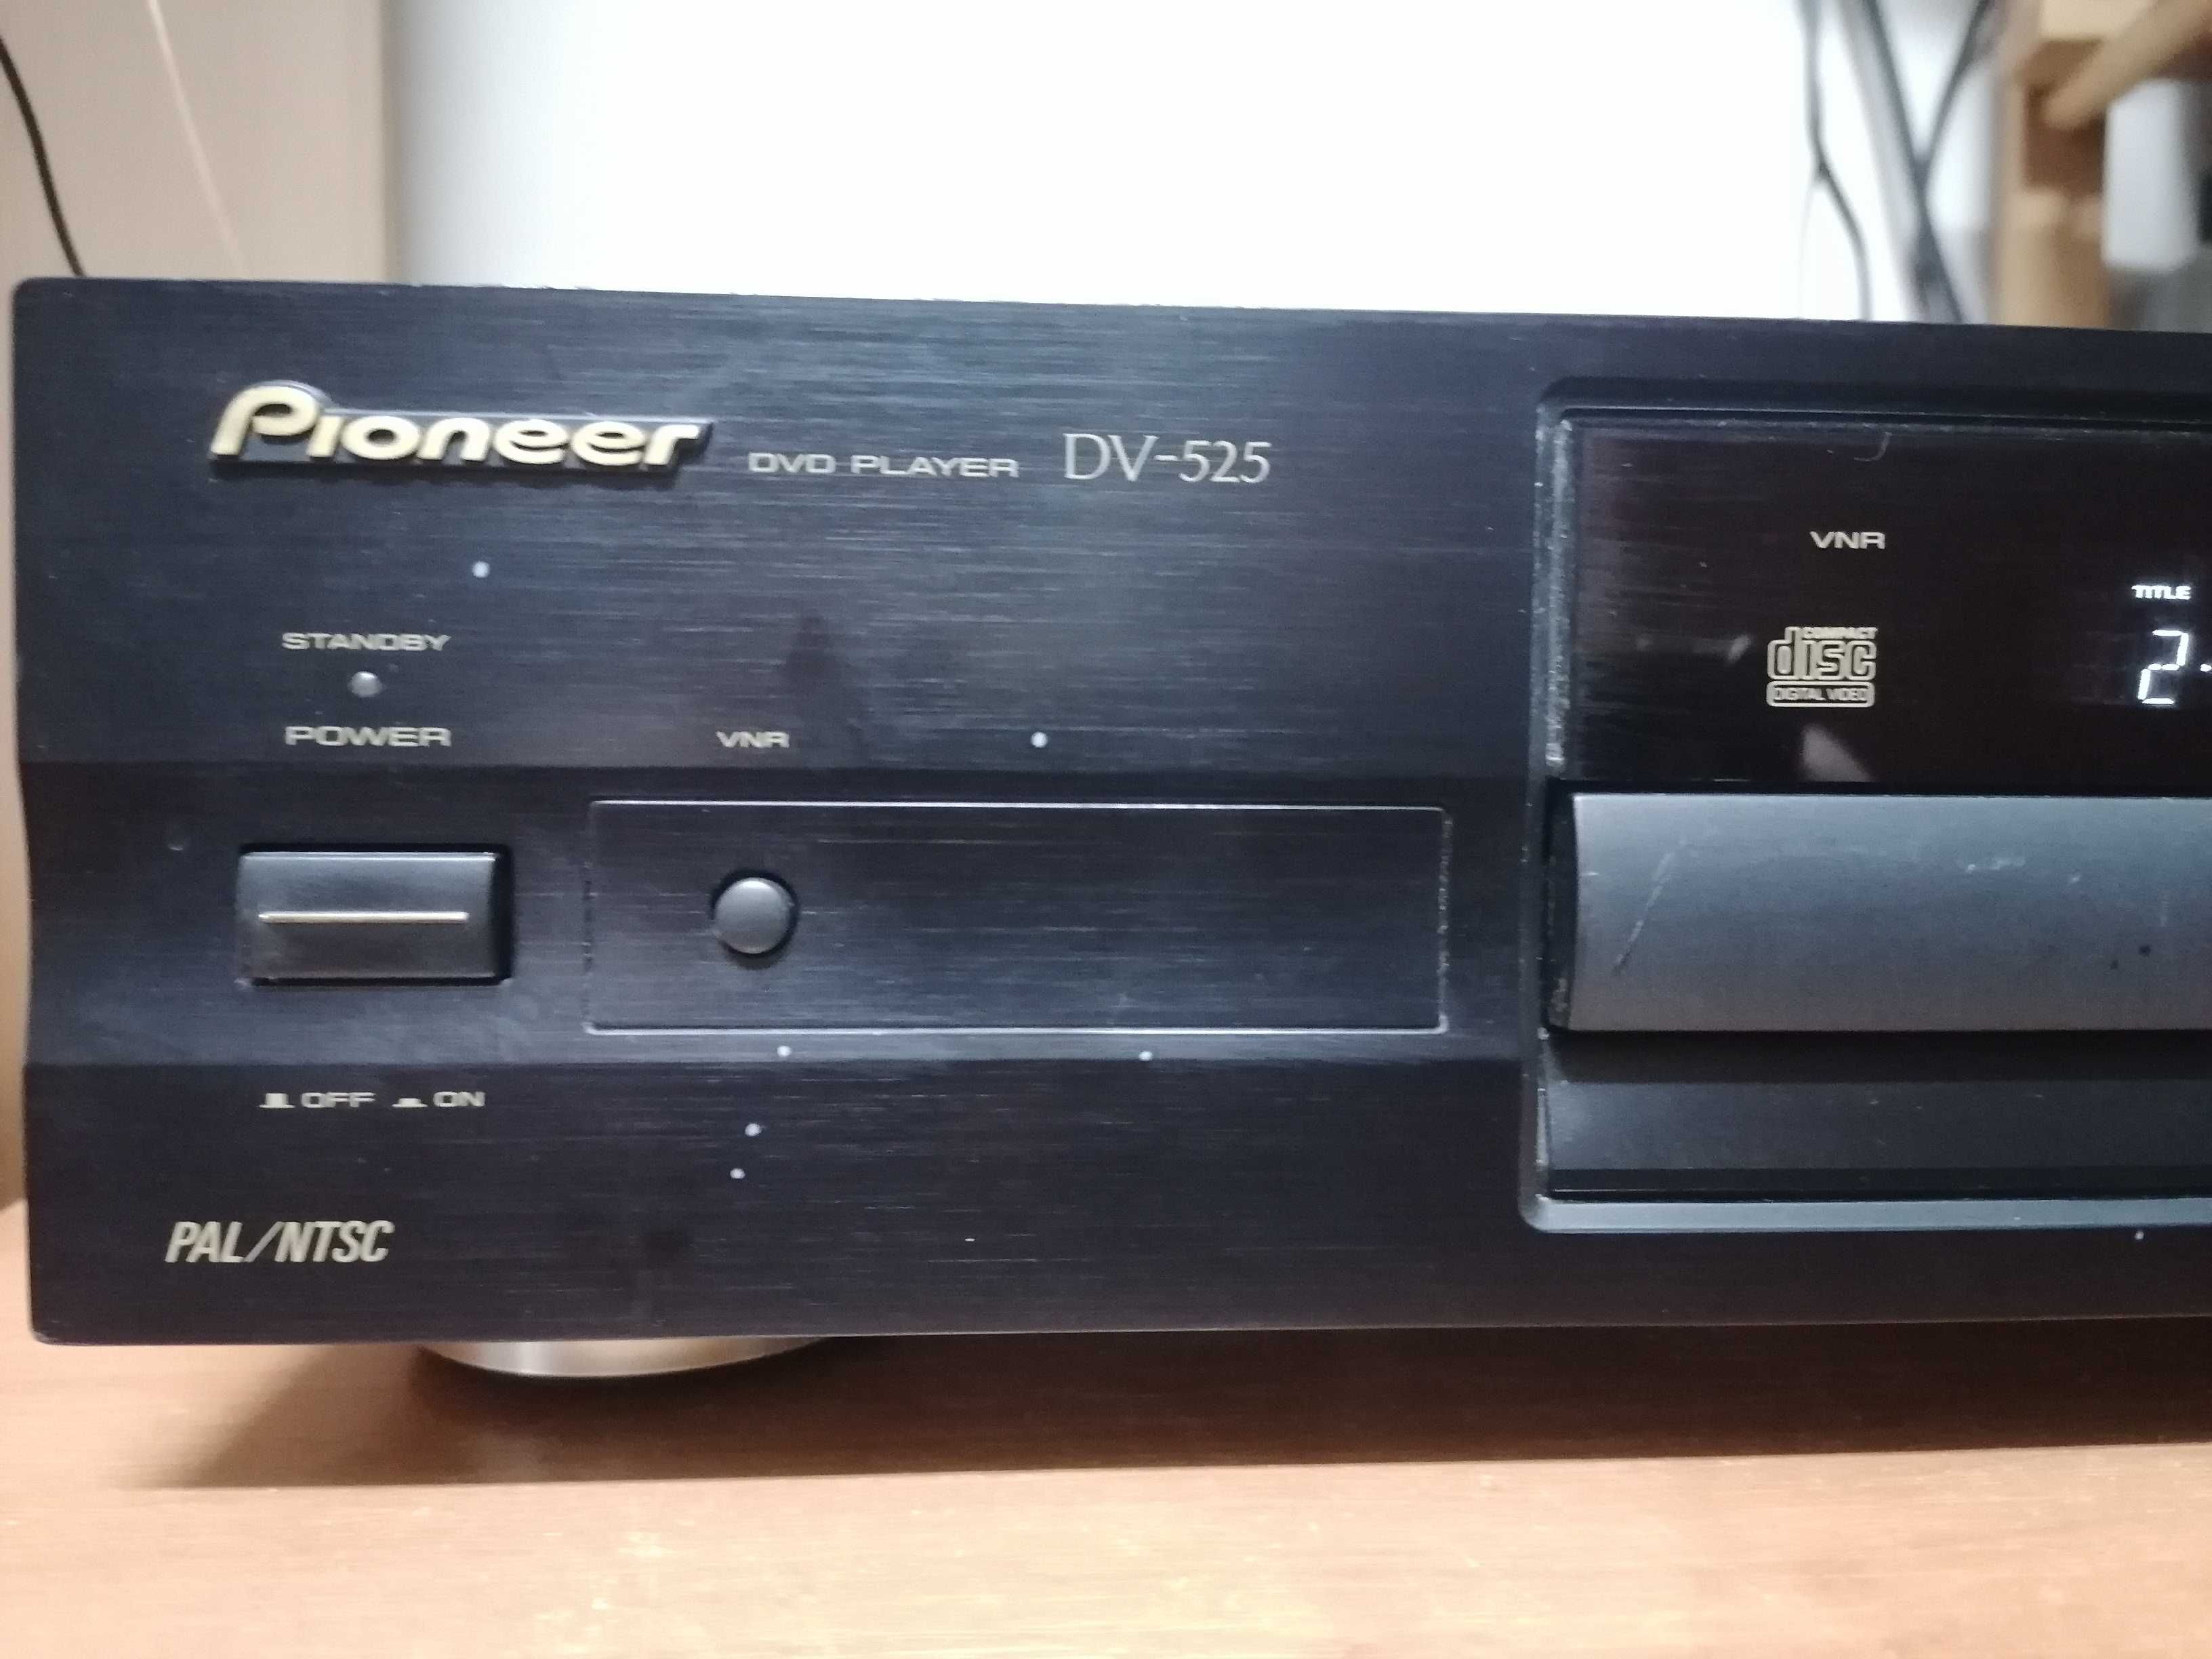 Odtwarzacz CD/DVD Pioneer DV-525